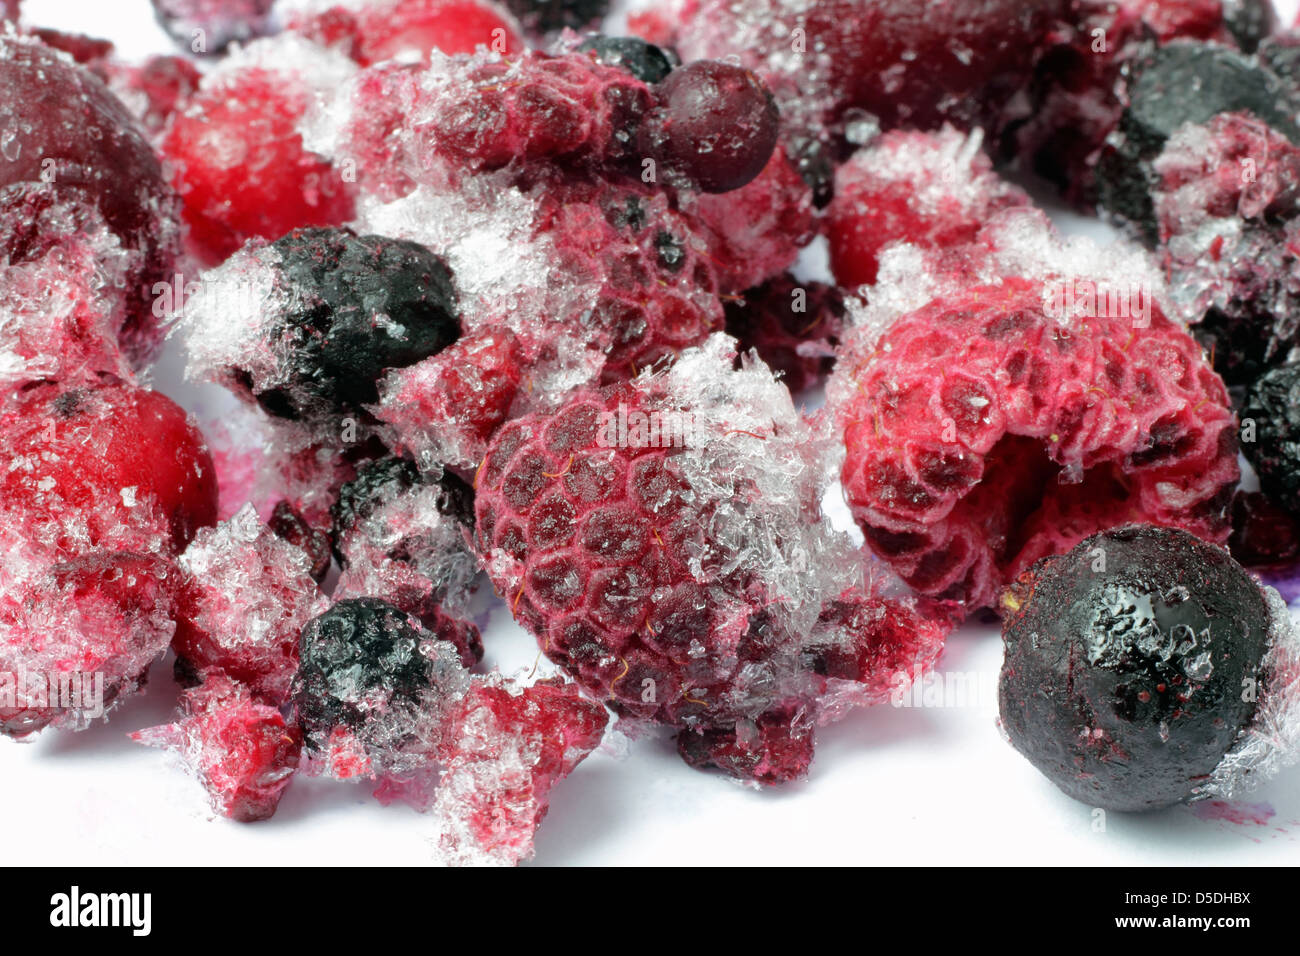 frozen wild berries Stock Photo